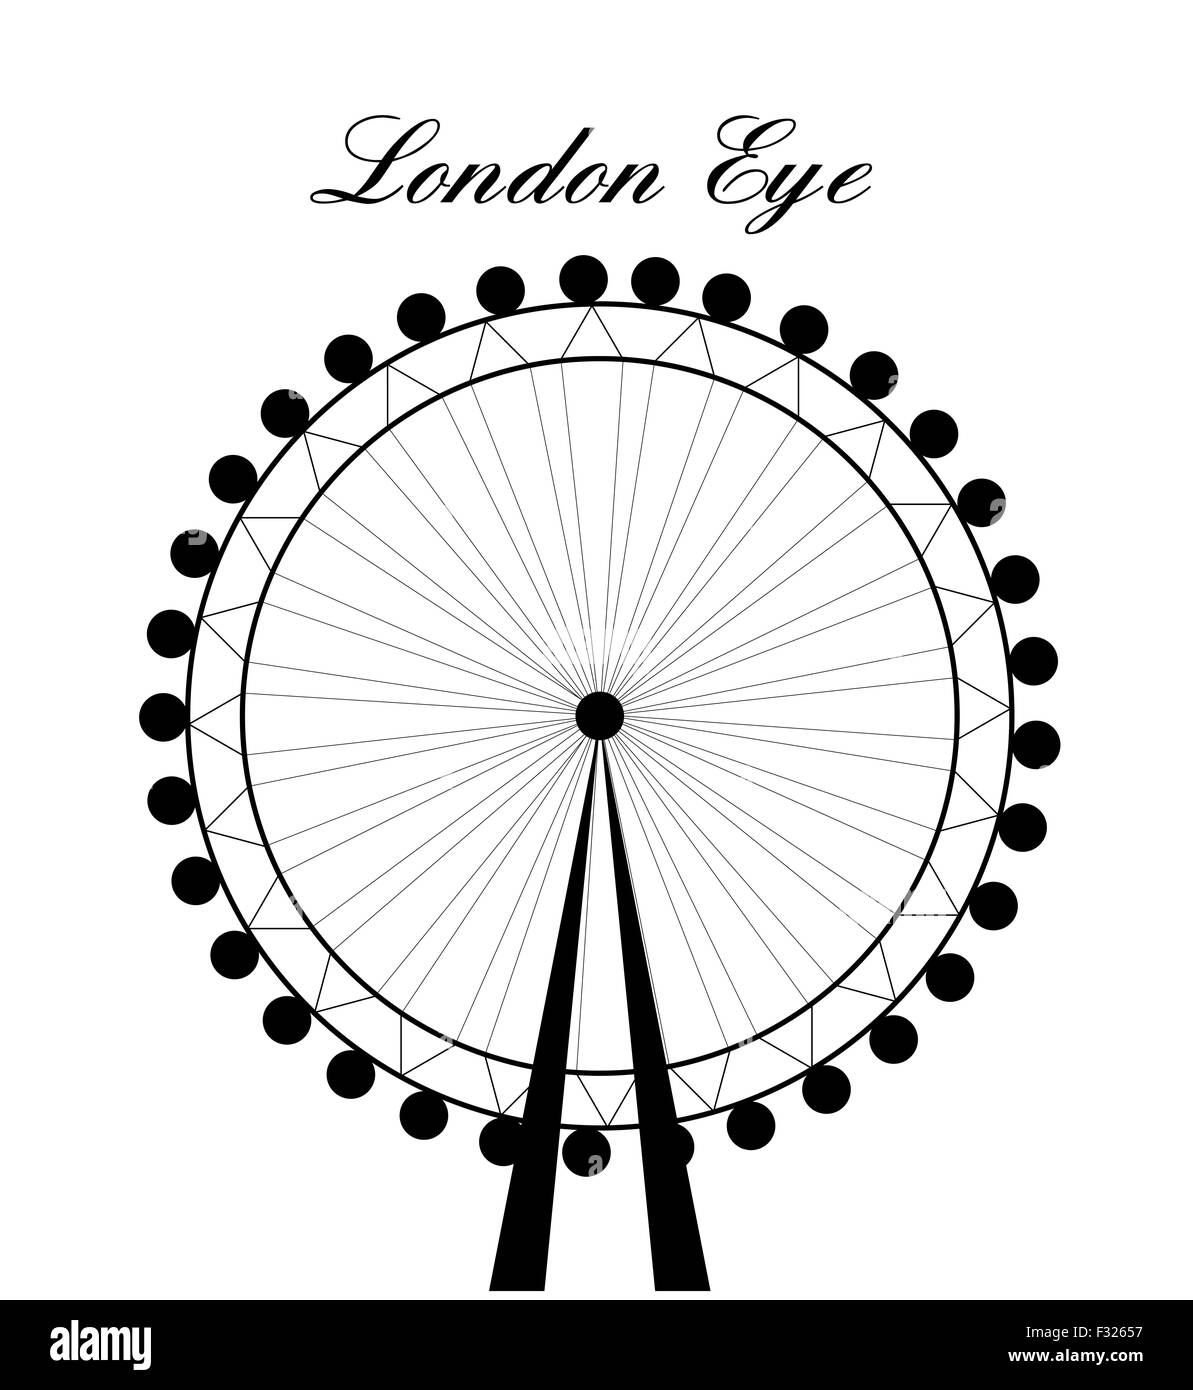 Image de caricature silhouette du London Eye avec signe.Vector illustration isolé sur fond blanc. Banque D'Images